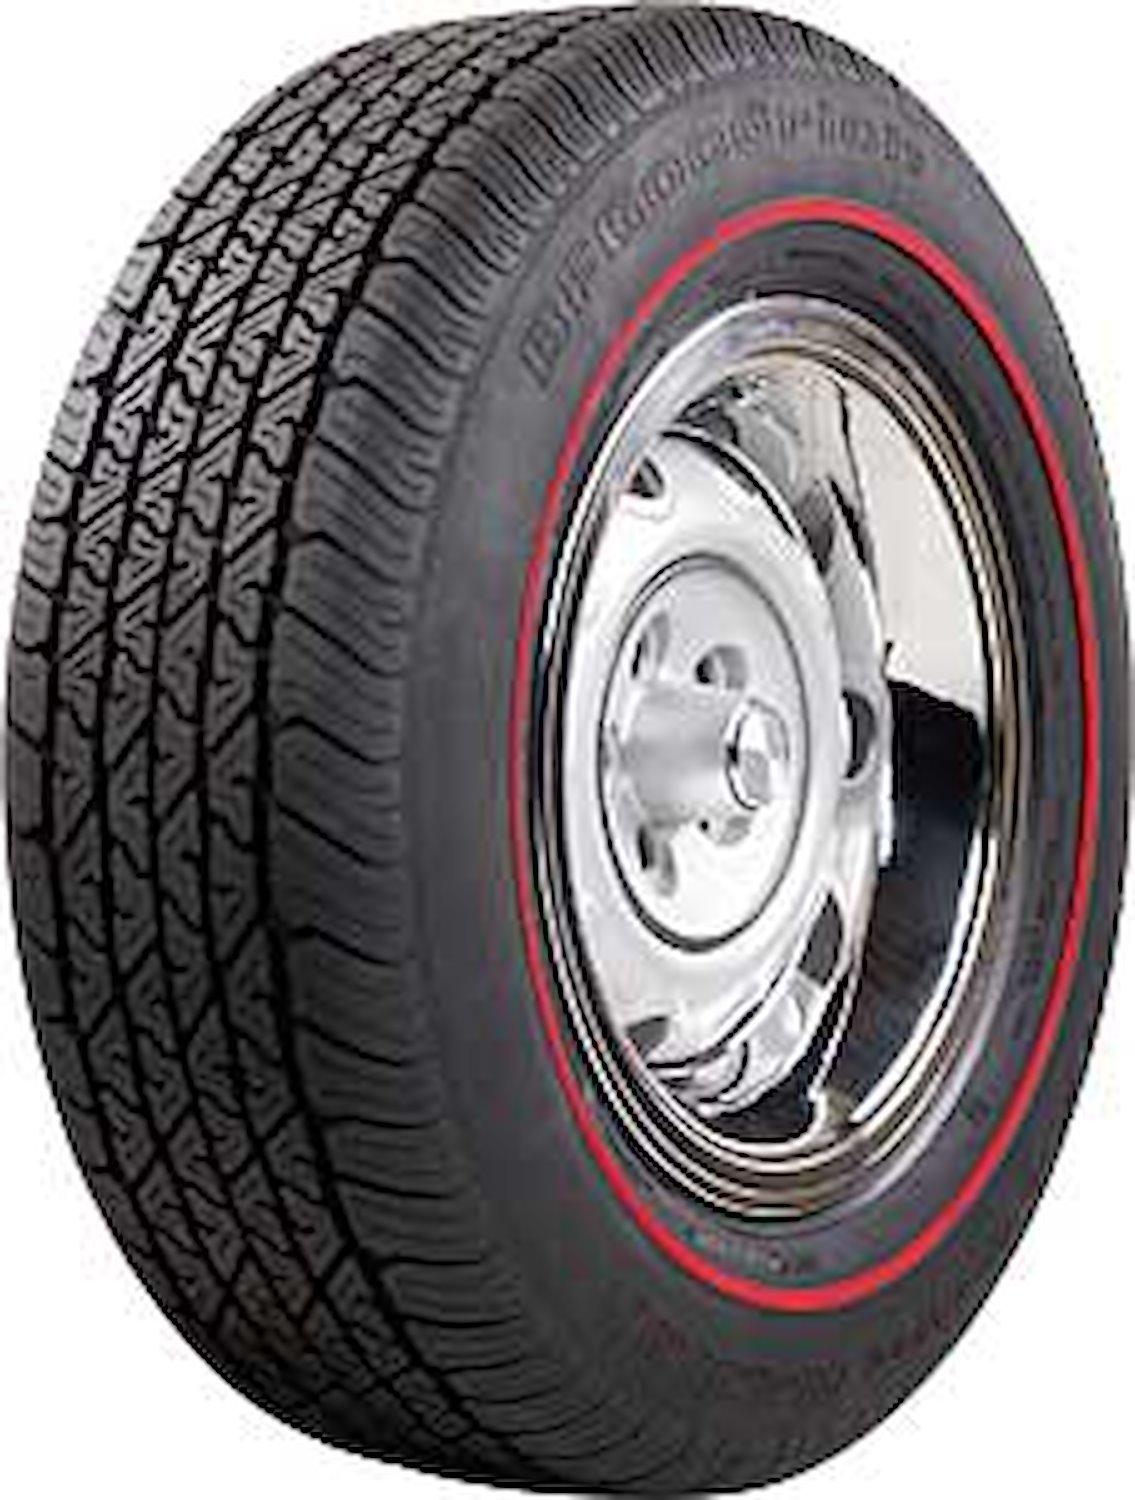 BF Goodrich Silvertown Redline Radial Tire P225/70R15